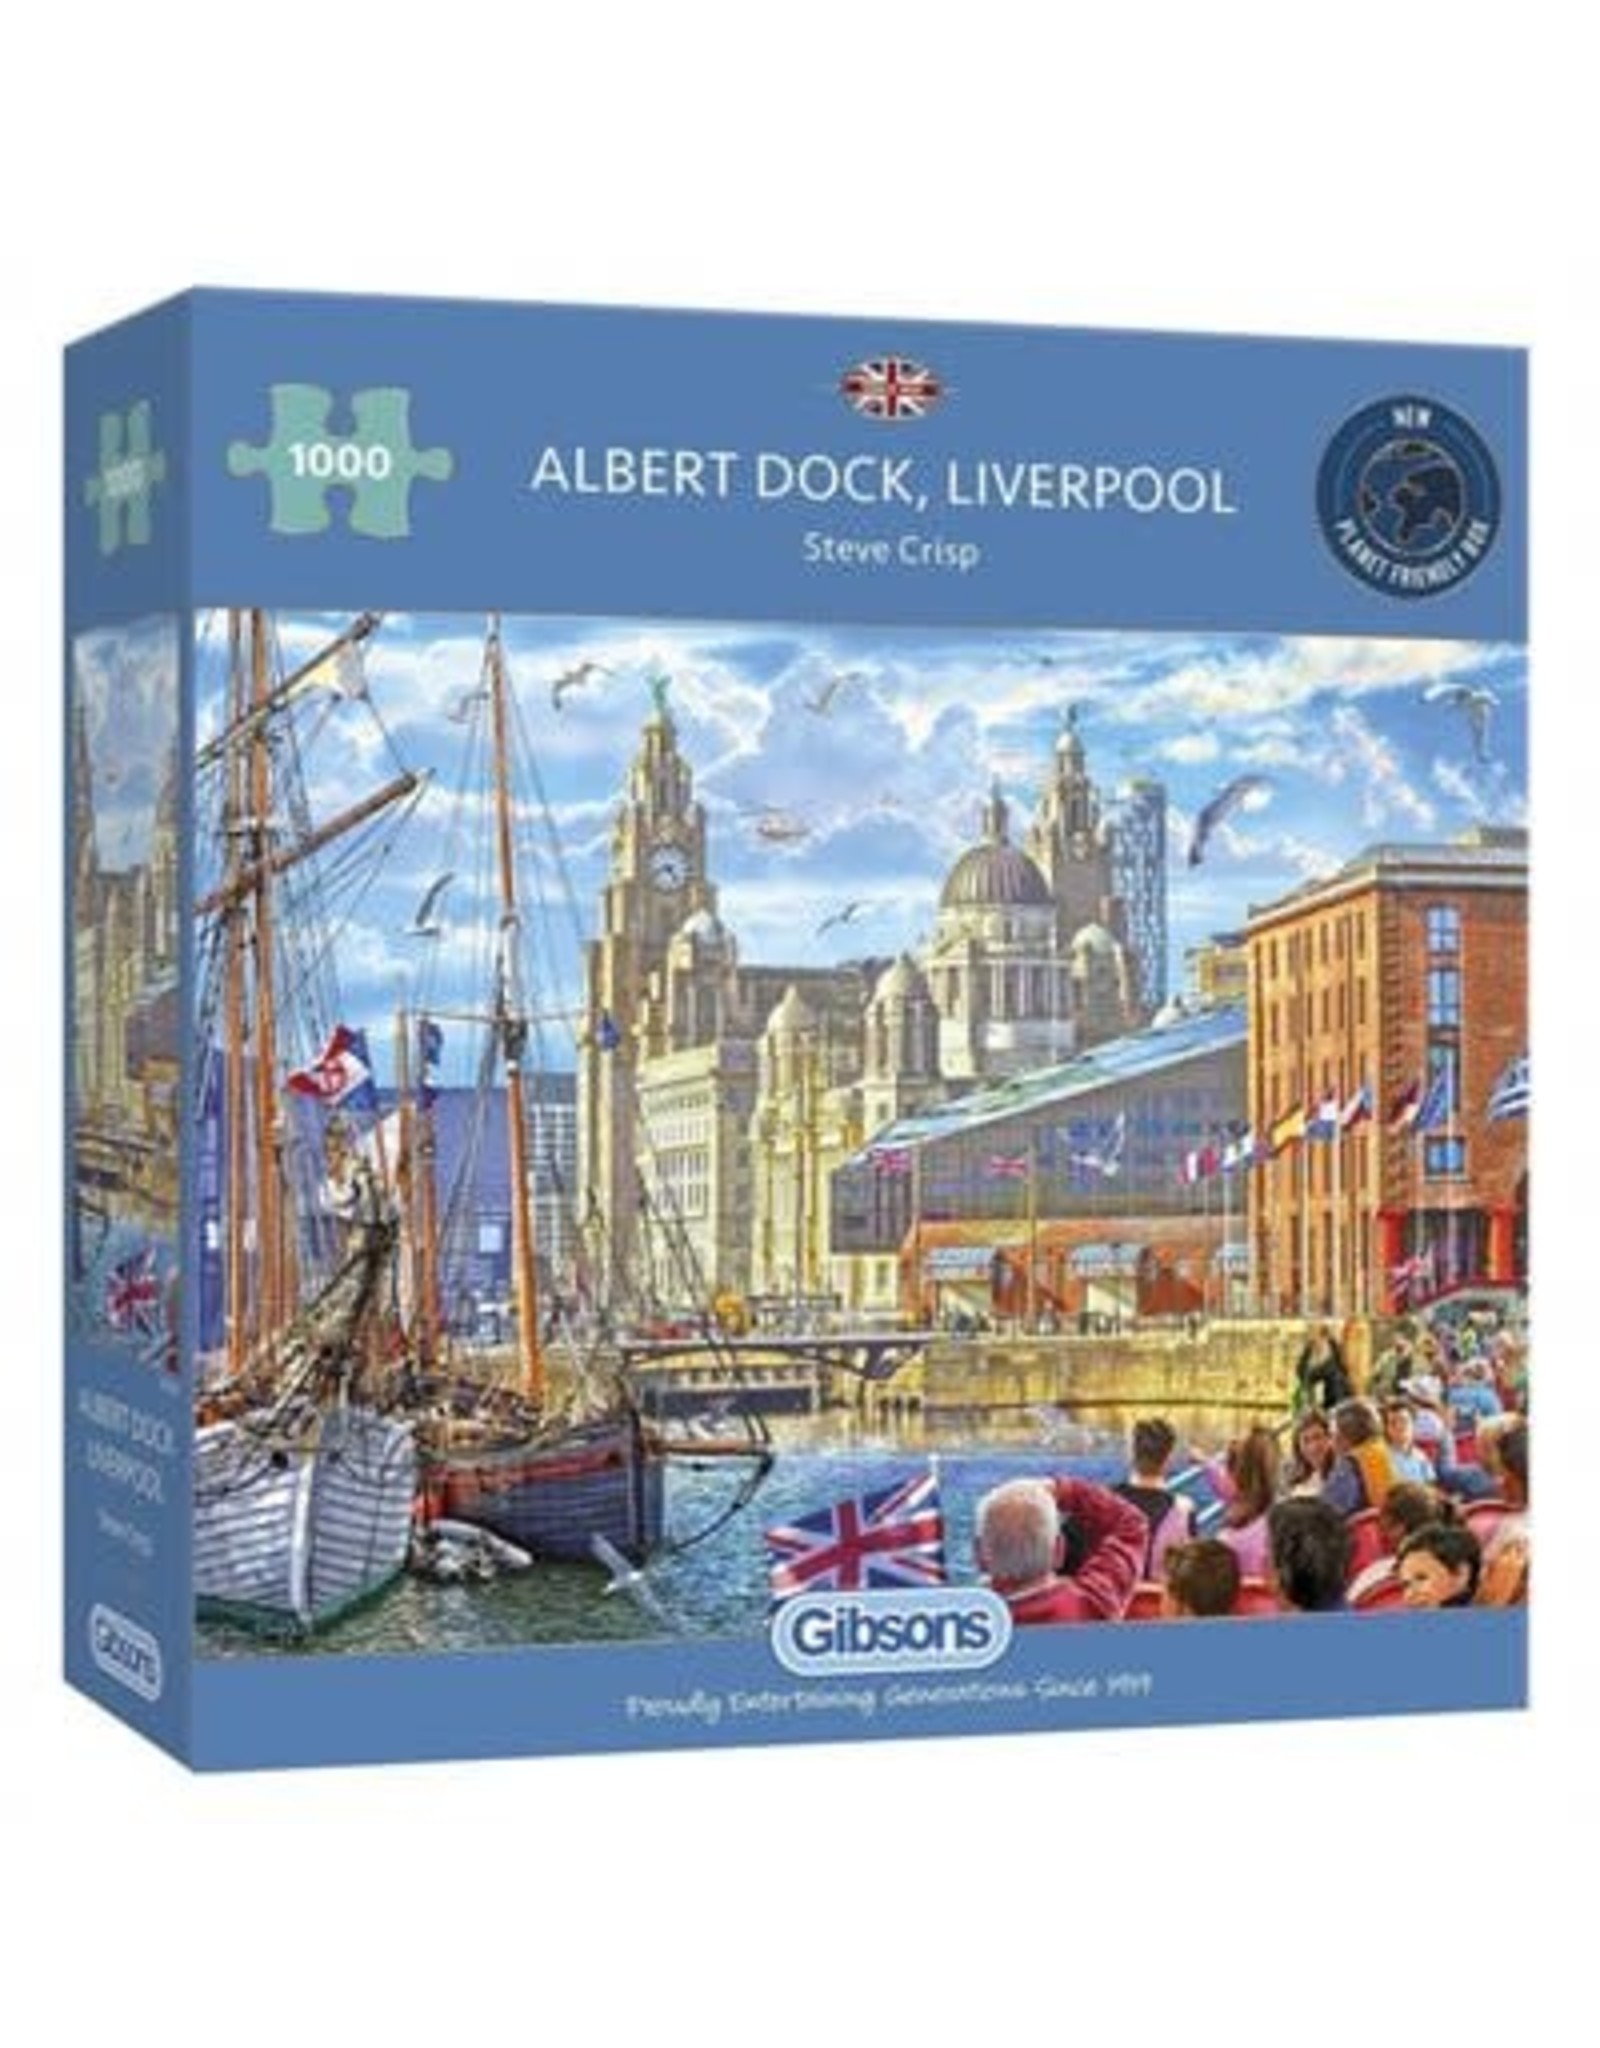 Albert Dock, Liverpool 1000pc